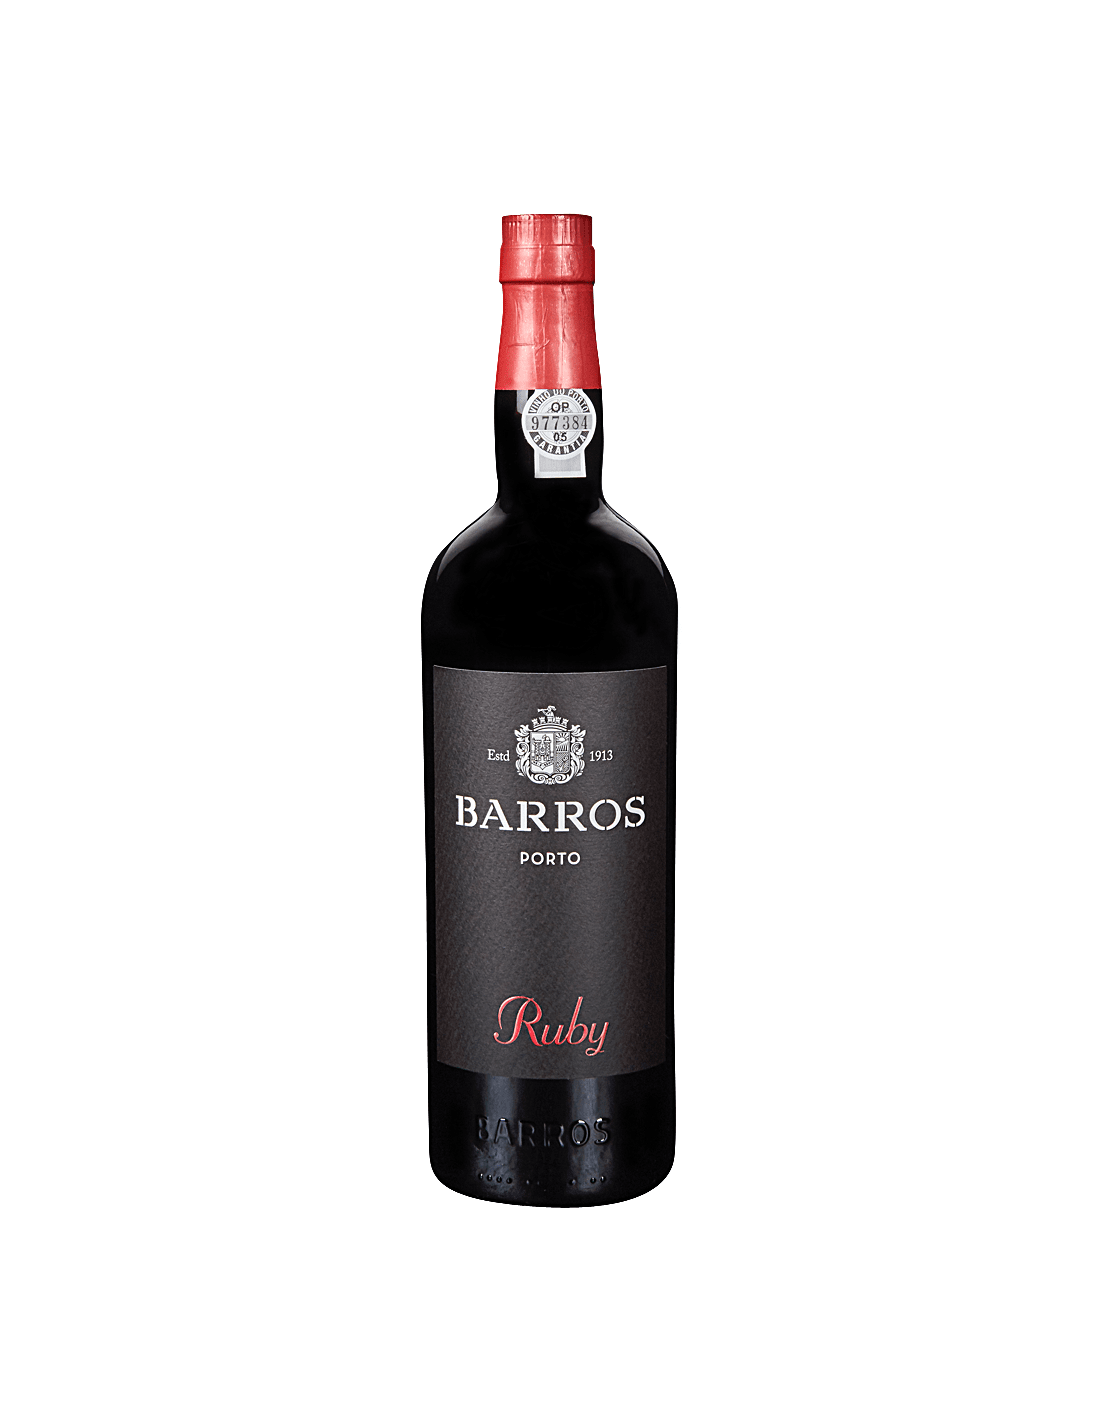 Vin porto rosu Barros Ruby, 0.75L, 20% alc., Portugalia alcooldiscount.ro